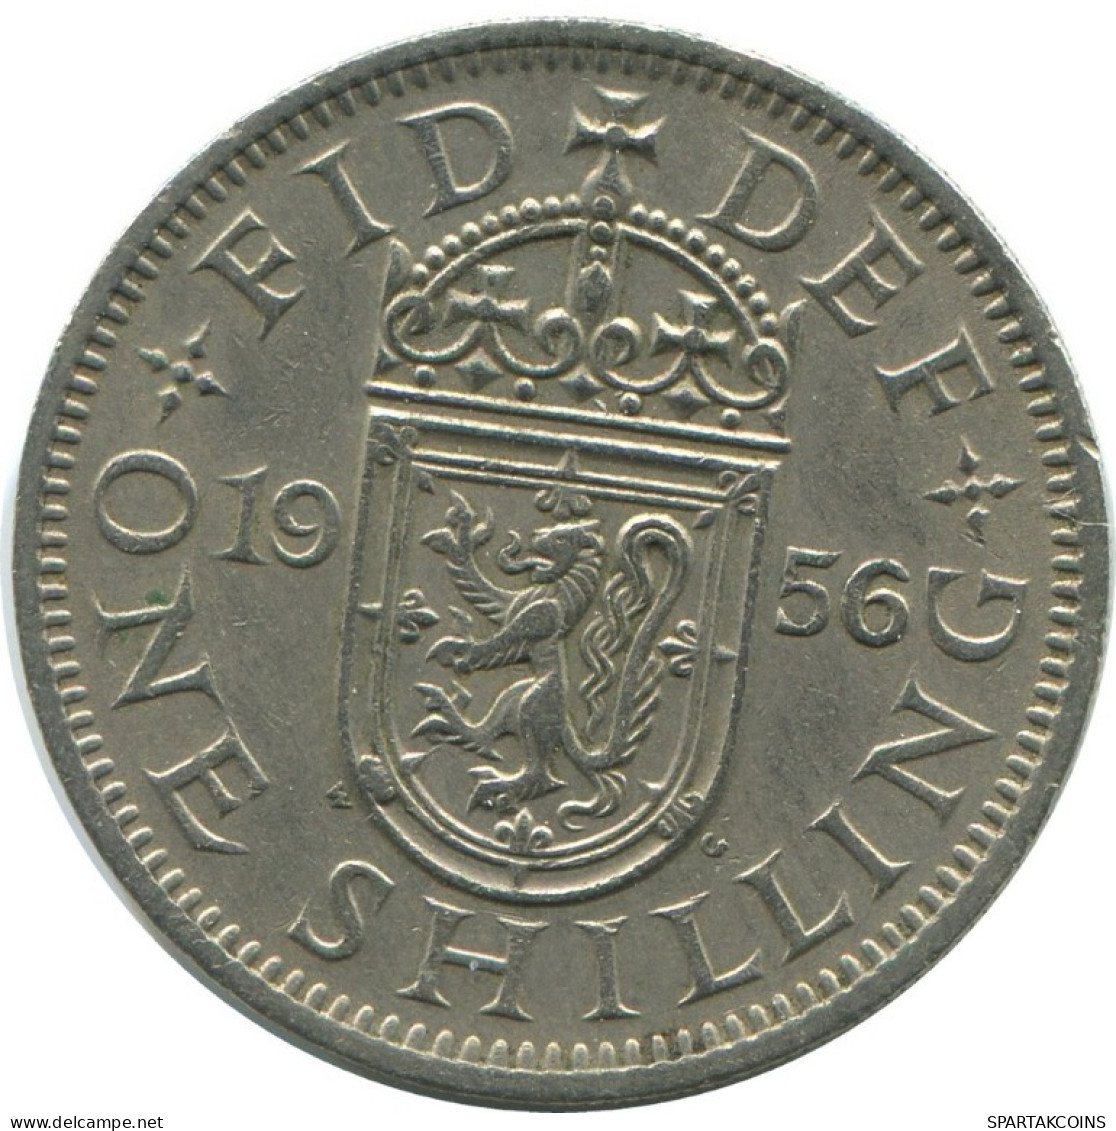 SHILLING 1956 UK GROßBRITANNIEN GREAT BRITAIN Münze #AG996.1.D.A - I. 1 Shilling